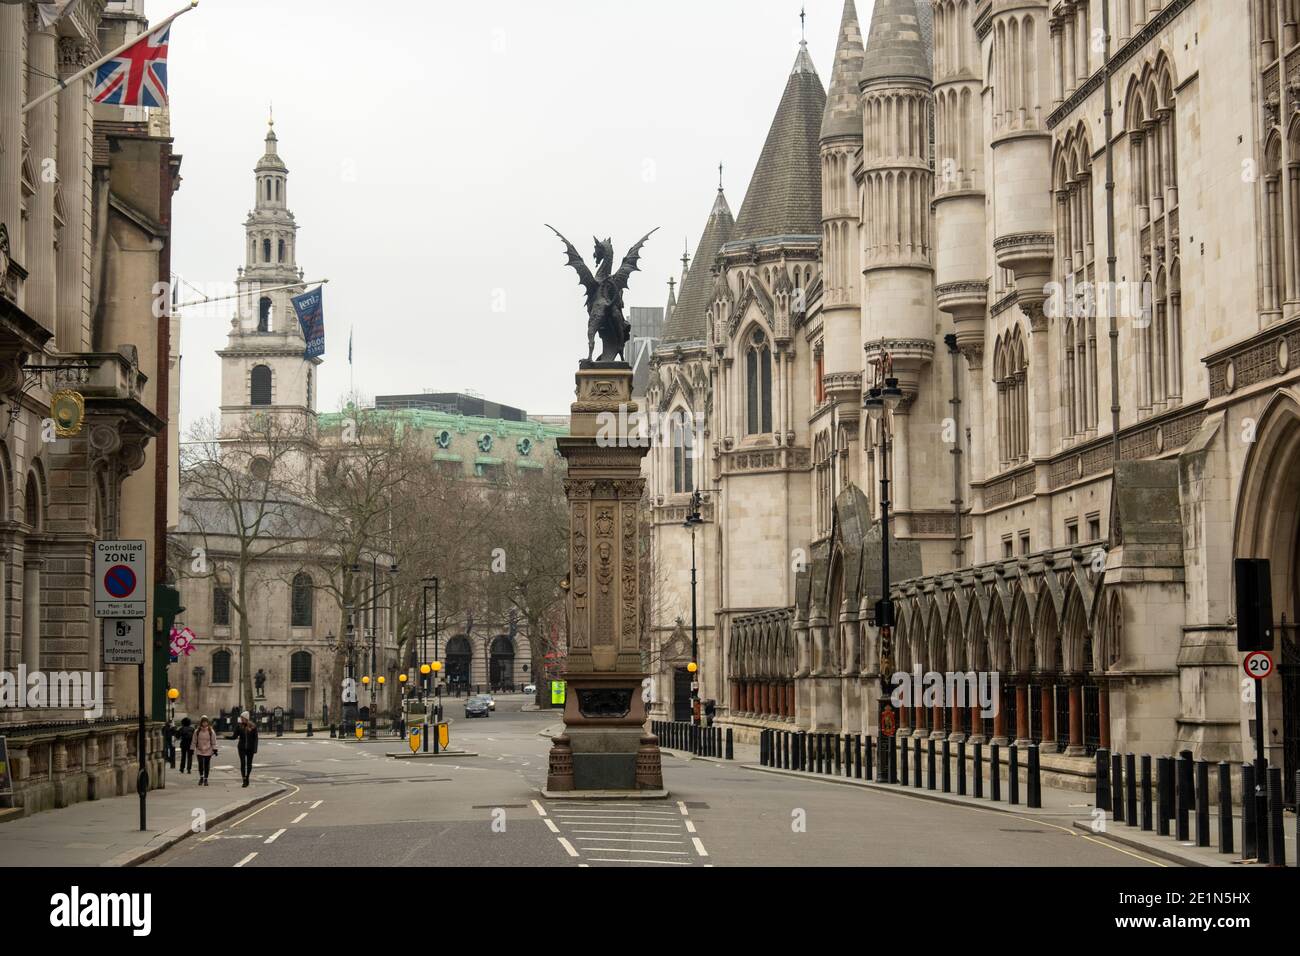 Londres, janvier 2021 : Fleet Street et les cours royales de justice. Rue vide en raison du confinement de Covid 19 Banque D'Images